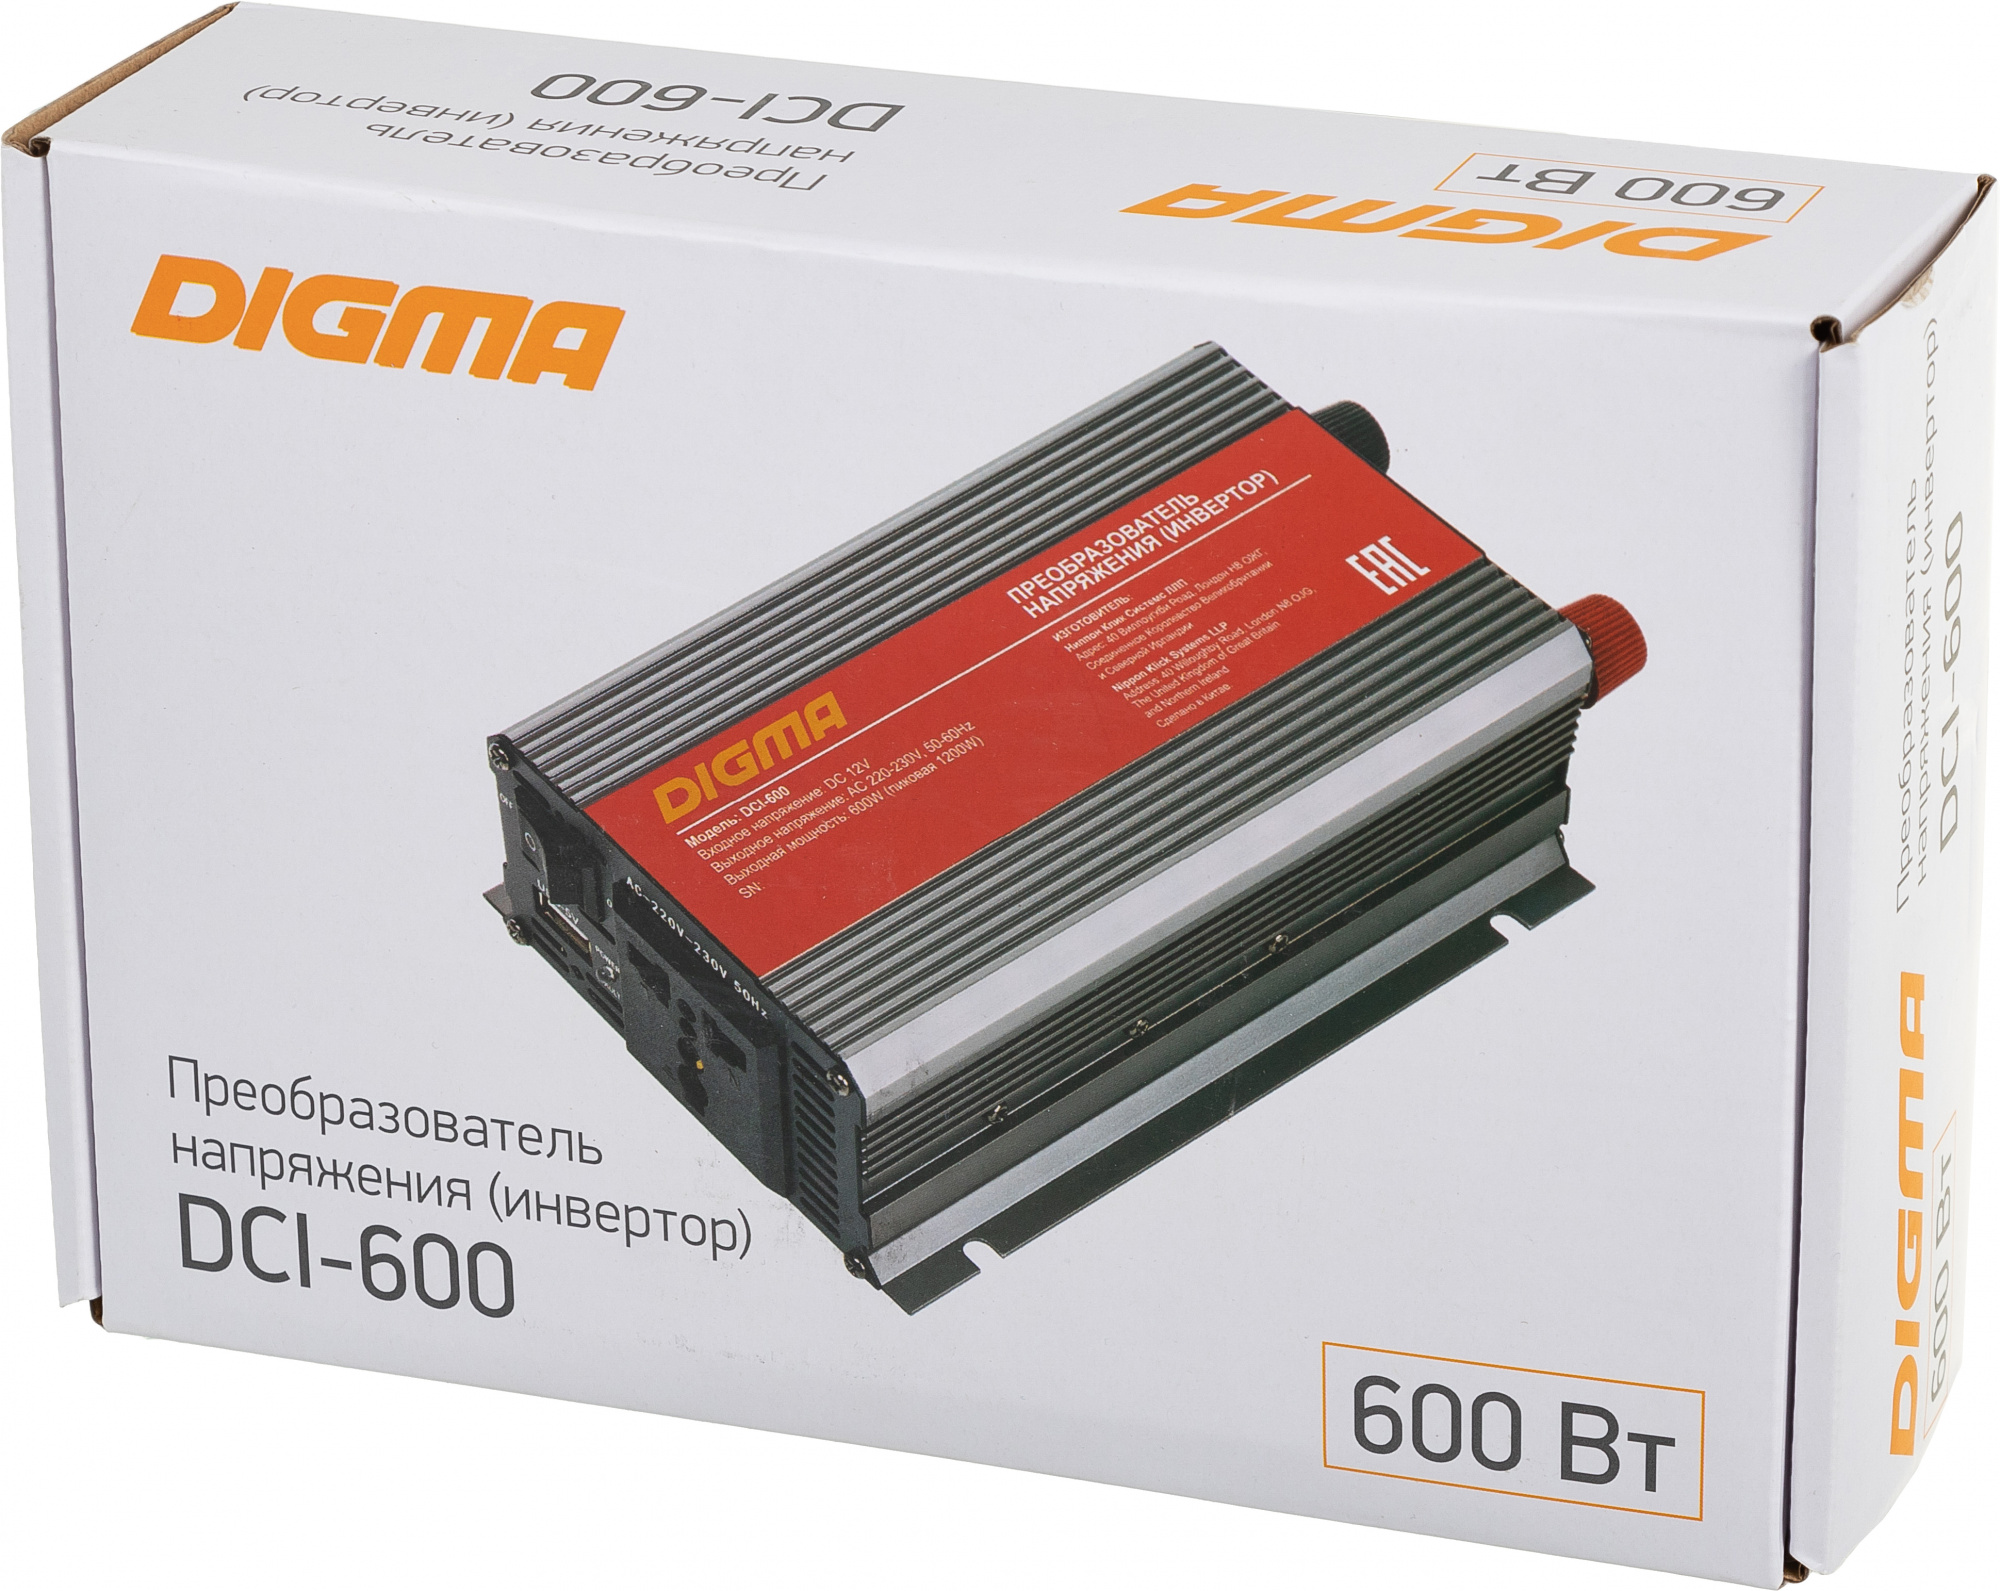 Преобразователь напряжения Digma DCI-600 600 Вт, 12В/220В, серебристый (DCI-600)